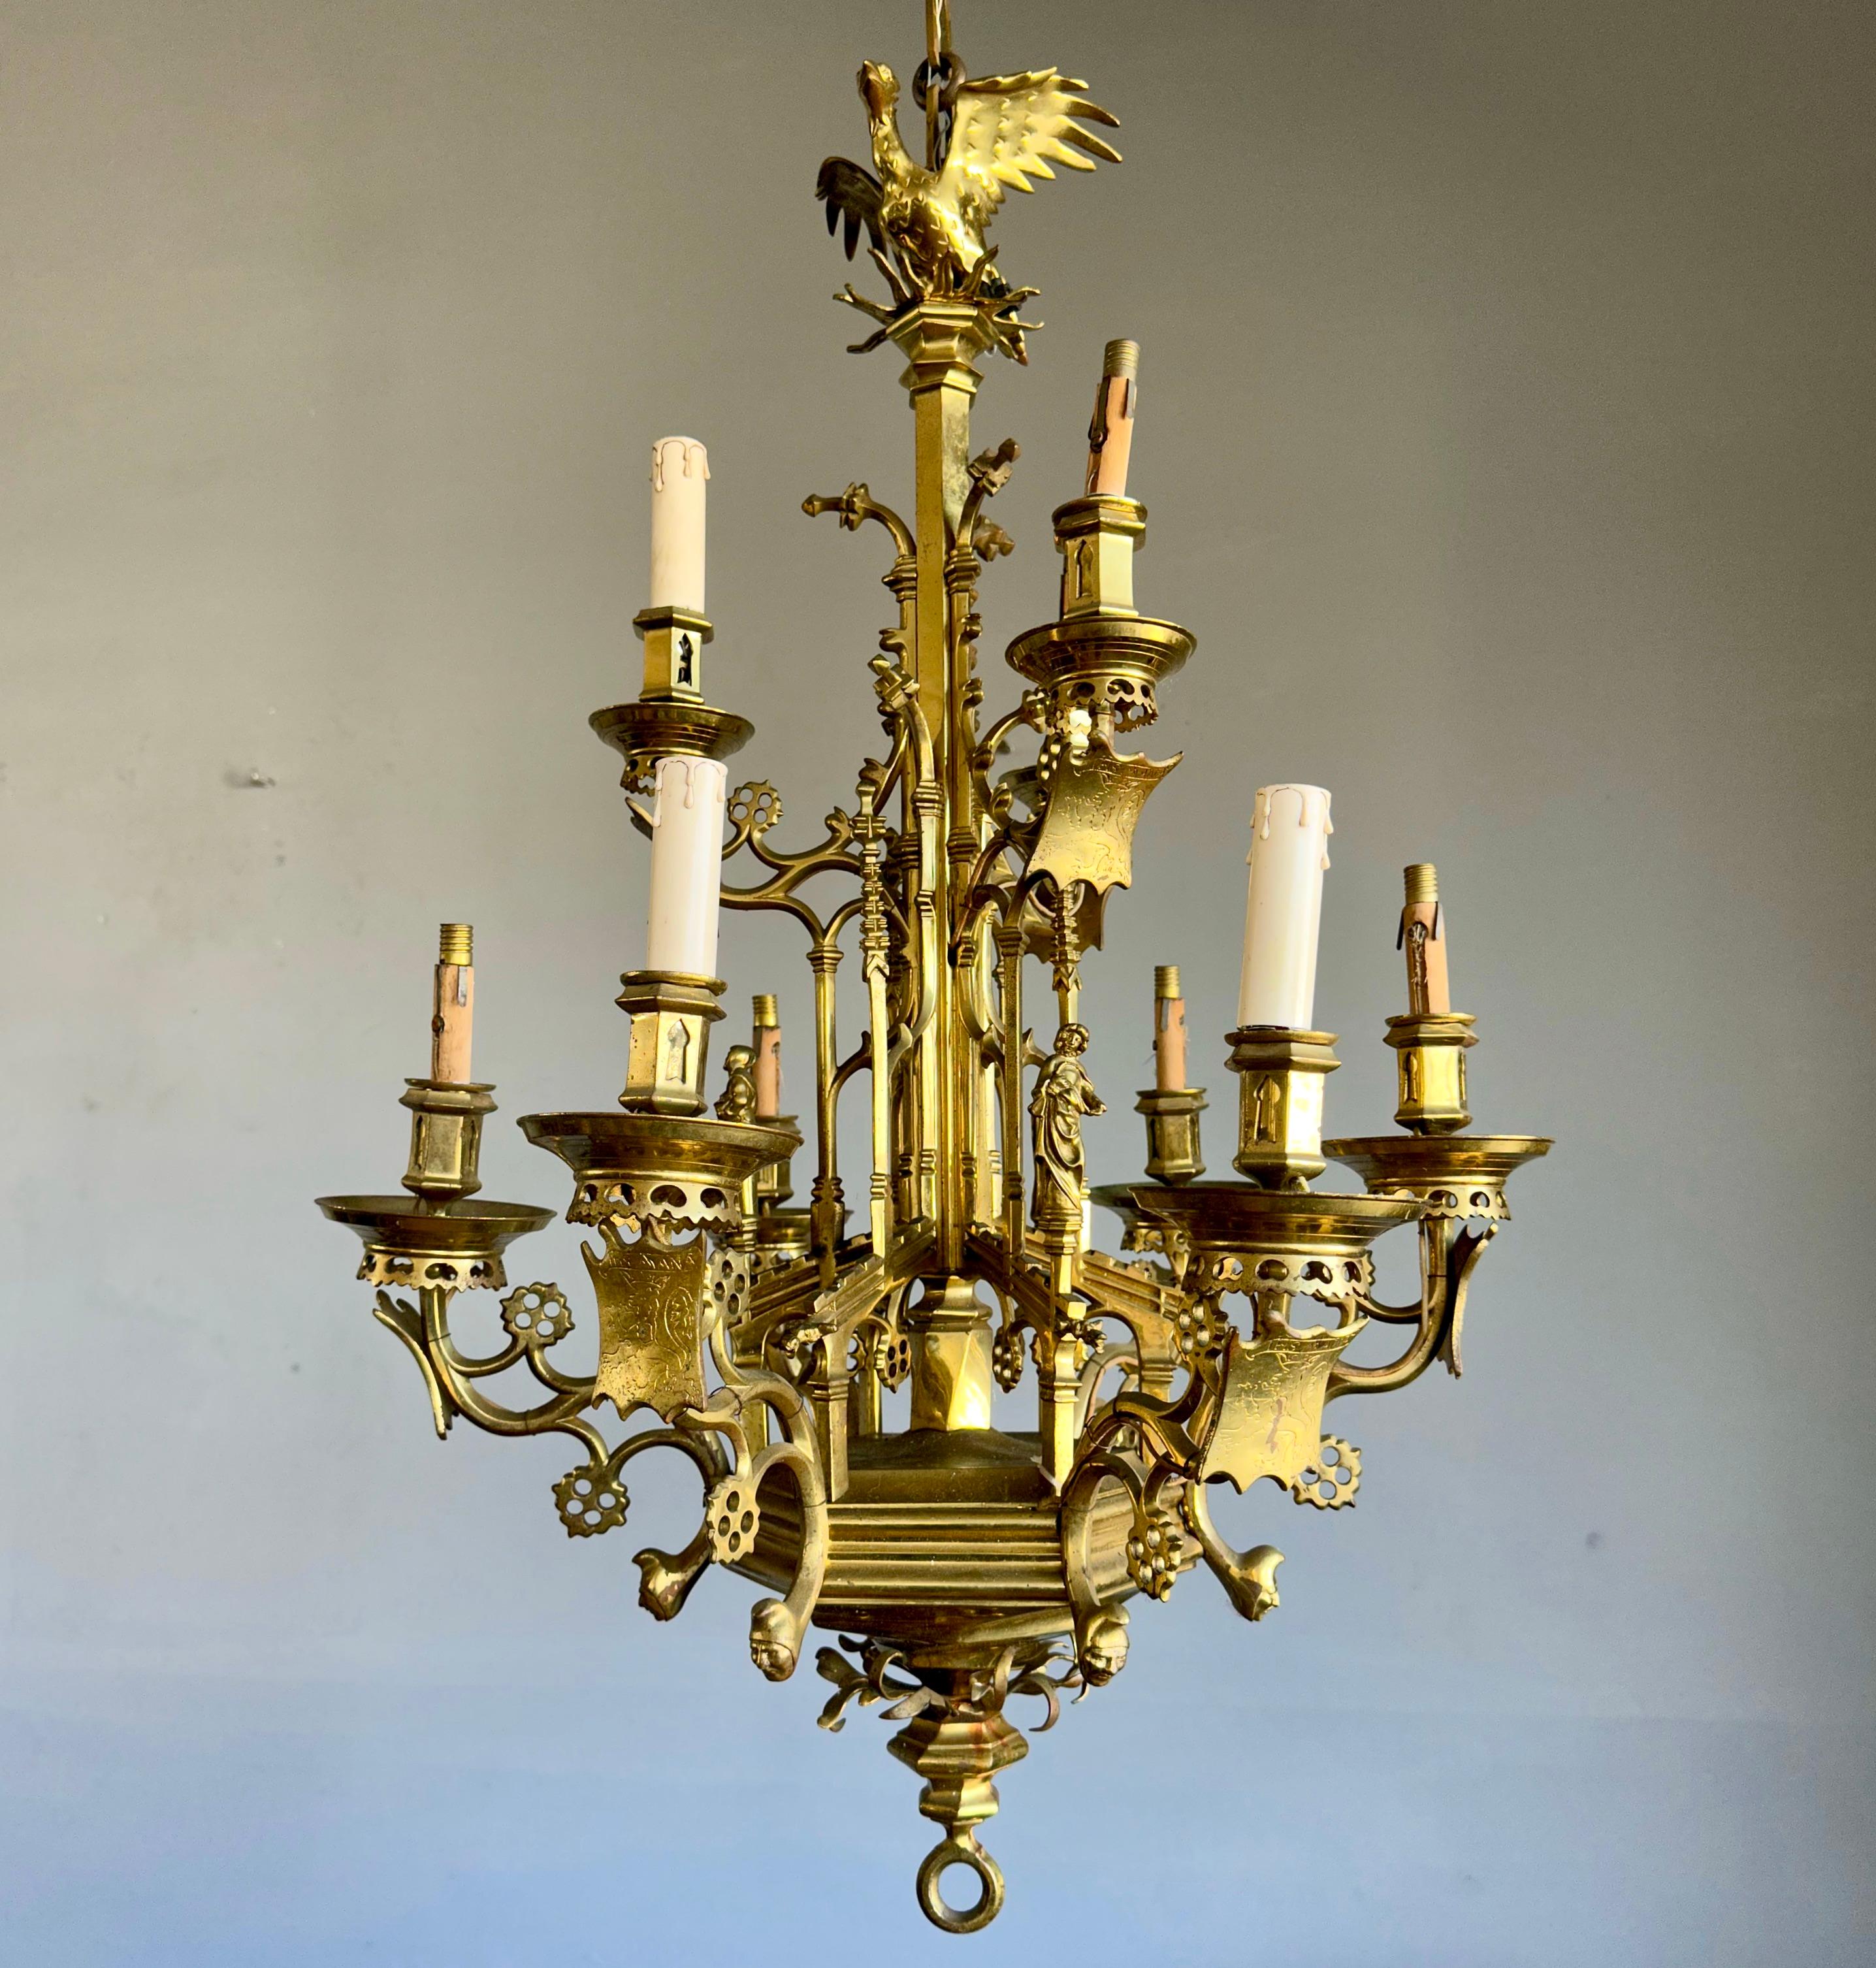 Ce luminaire néo-gothique, fabriqué à la main et vraiment impressionnant, peut également être utilisé pour les bougies.

Au fil des décennies, nous avons vendu un certain nombre de très bons luminaires gothiques en bronze ancien pour bougies et